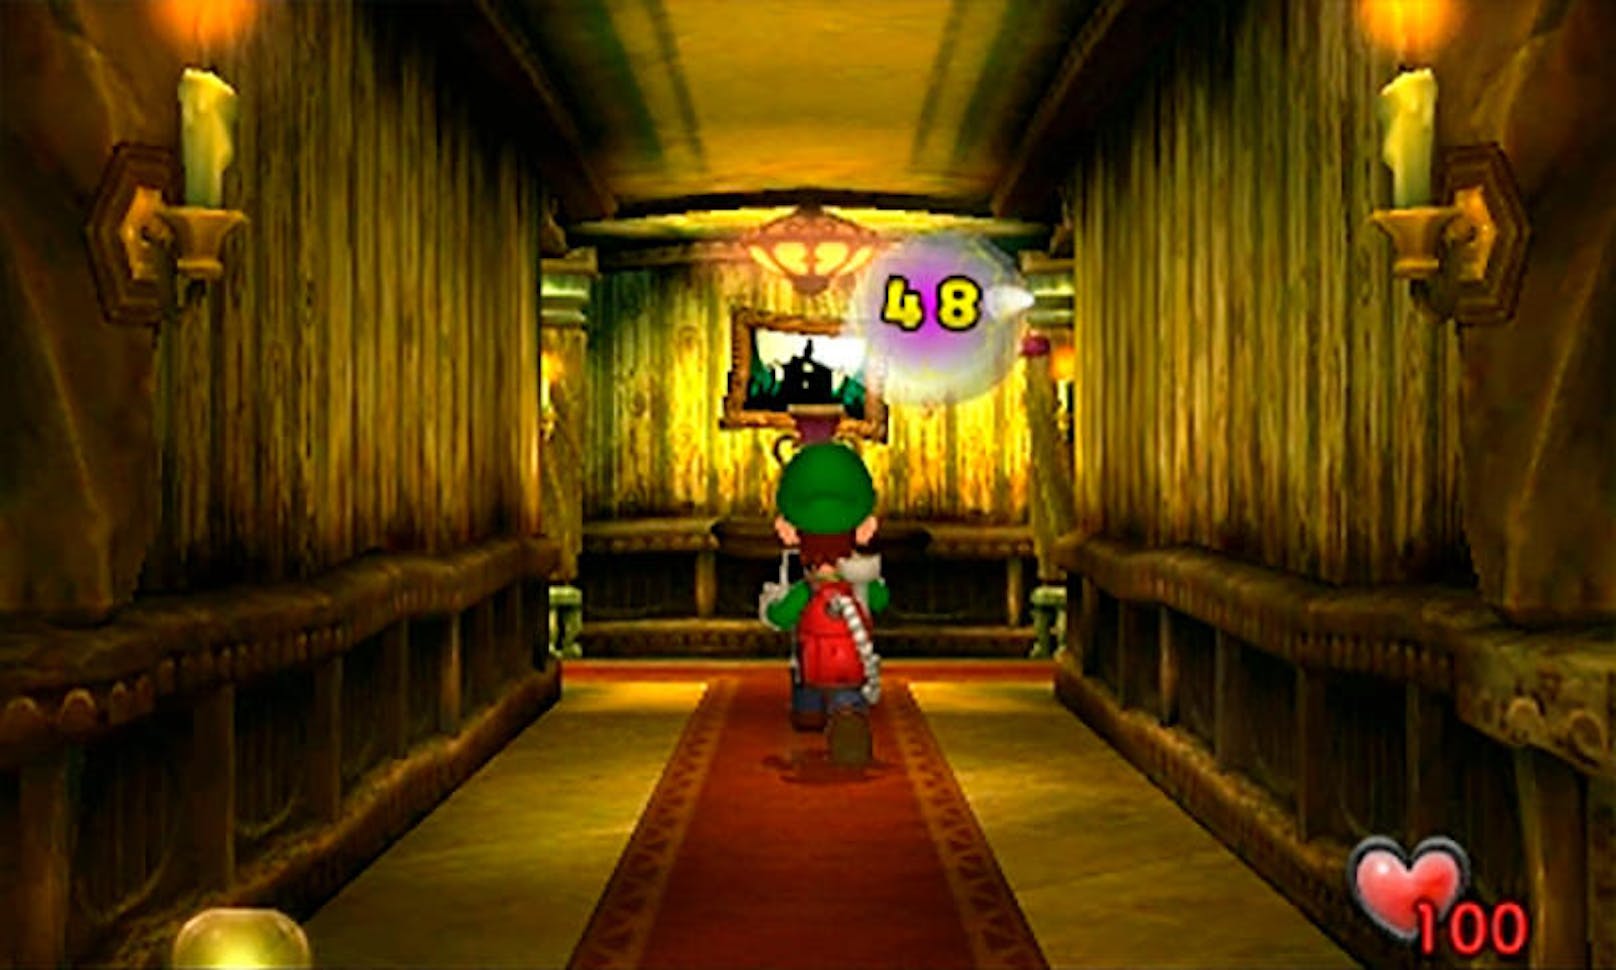 Der Klassiker stammt ursprünglich aus dem Jahr 2002 und war eines der ersten Spiele für den Nintendo GameCube. Mehr noch: Das Game musste das fehlende Mario-Spiel zum Launch der Konsole kompensieren.